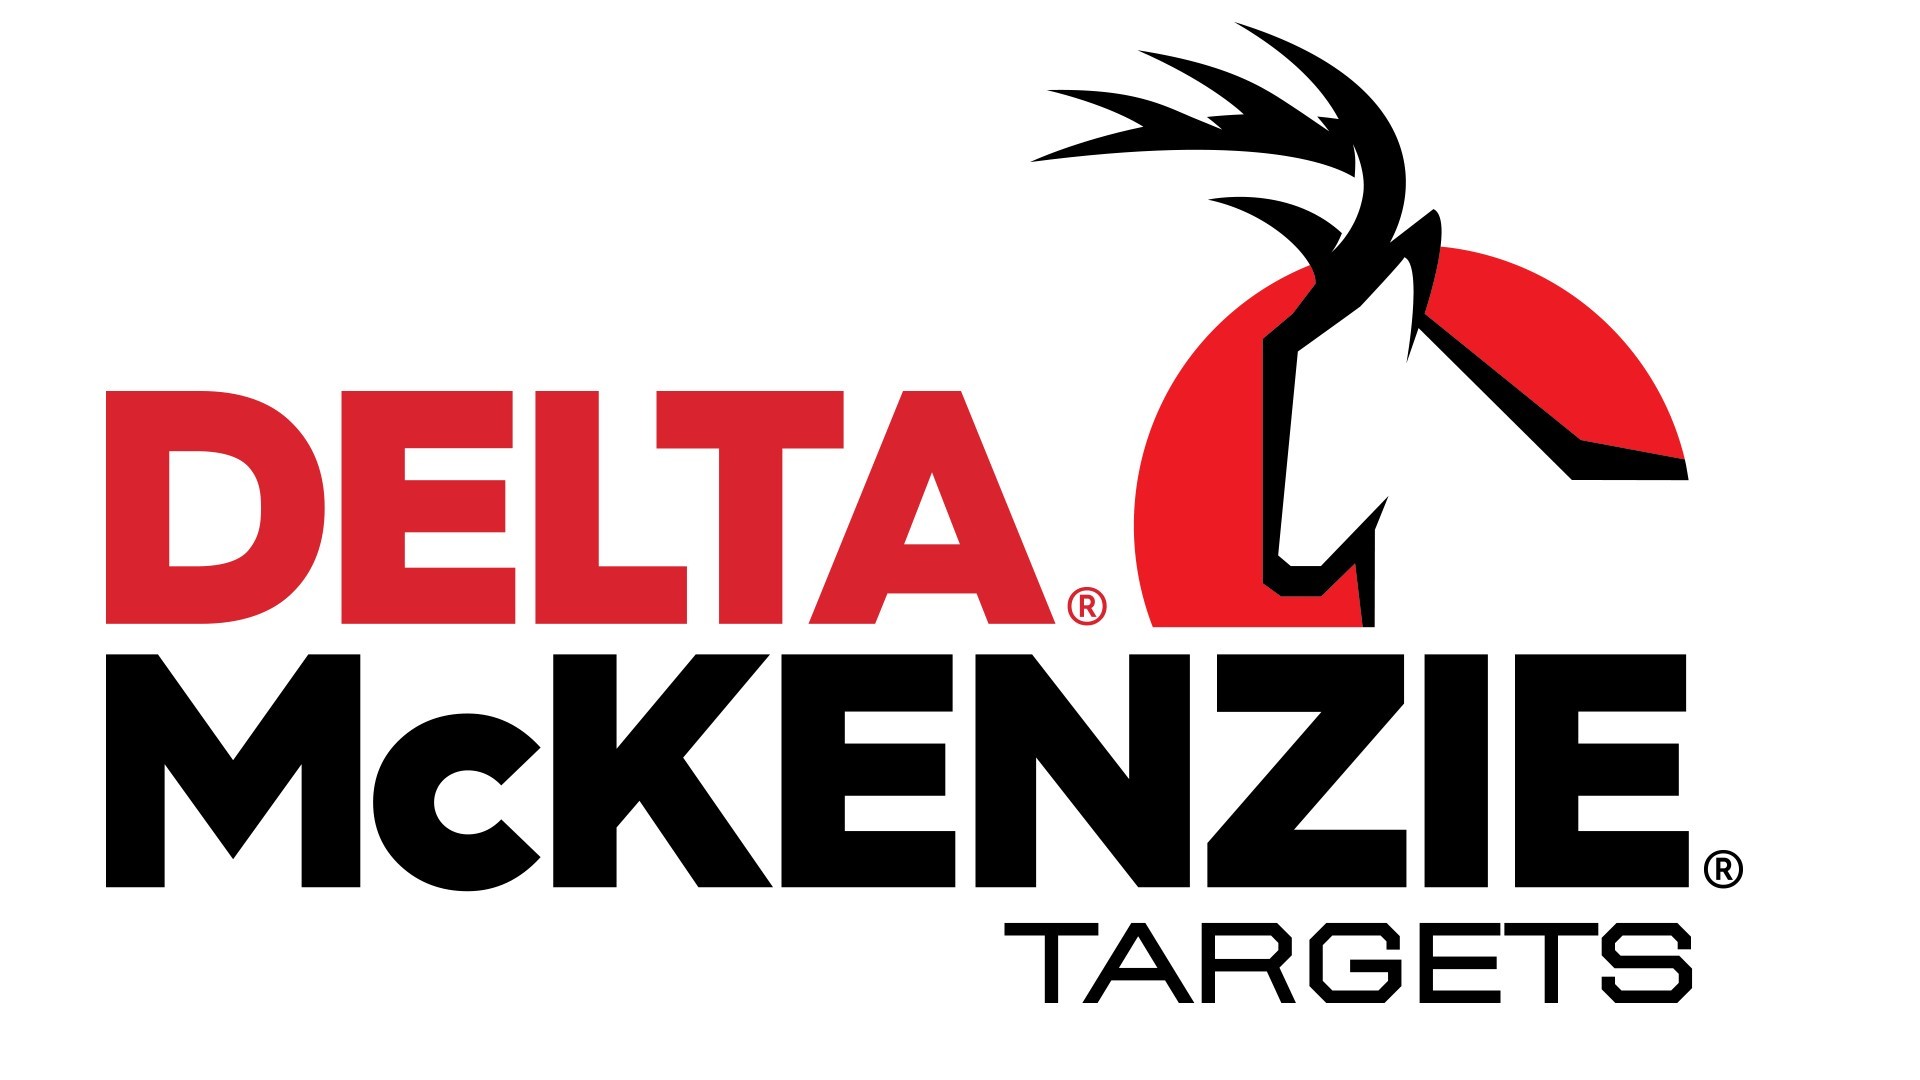 Delta McKenzie Targets